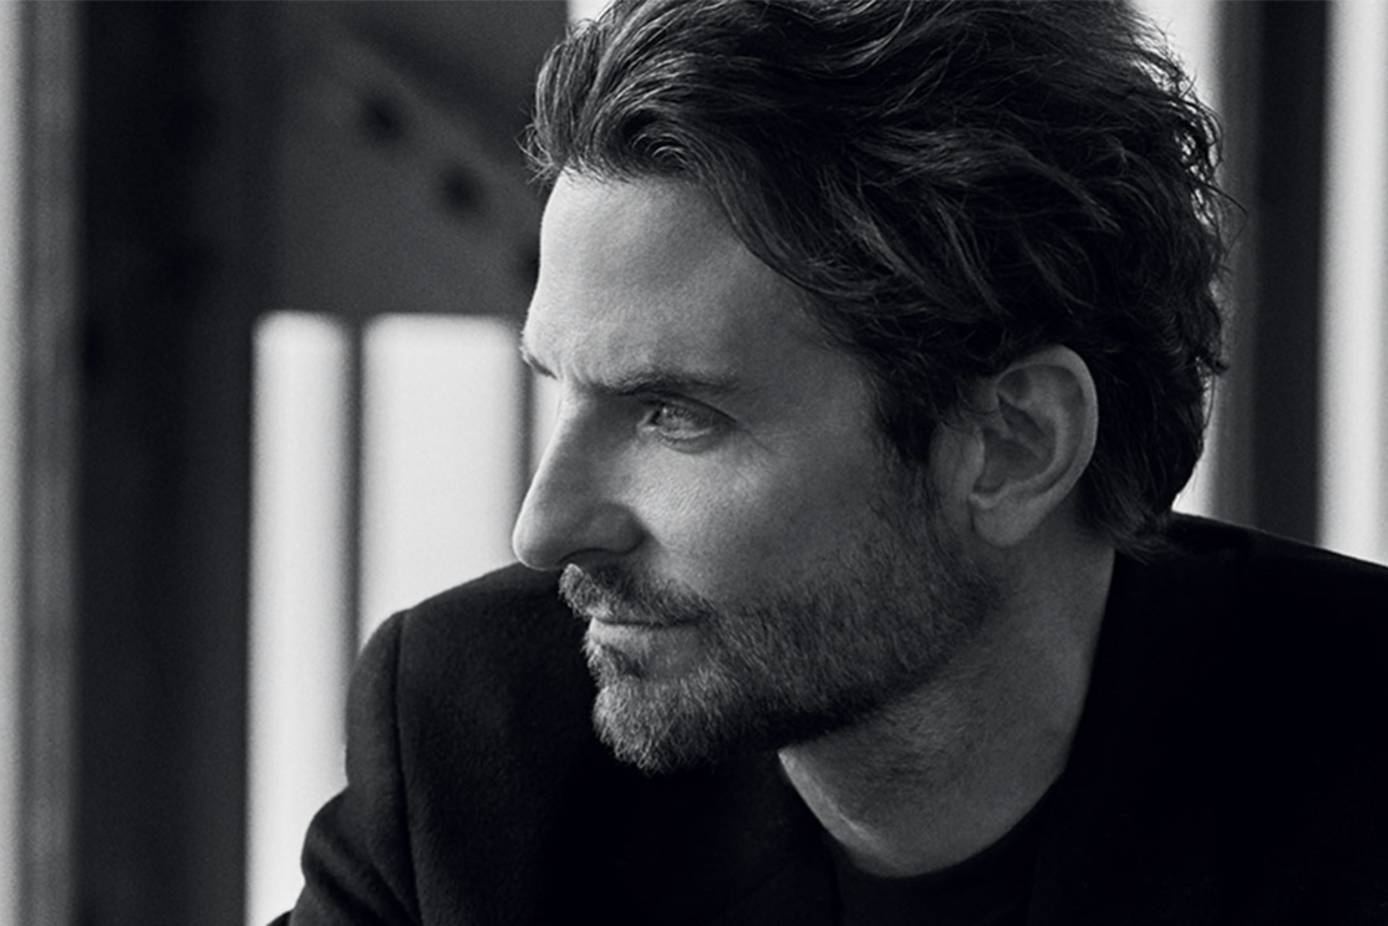 Montre Tambour : Bradley Cooper interprète un nouveau chapitre de